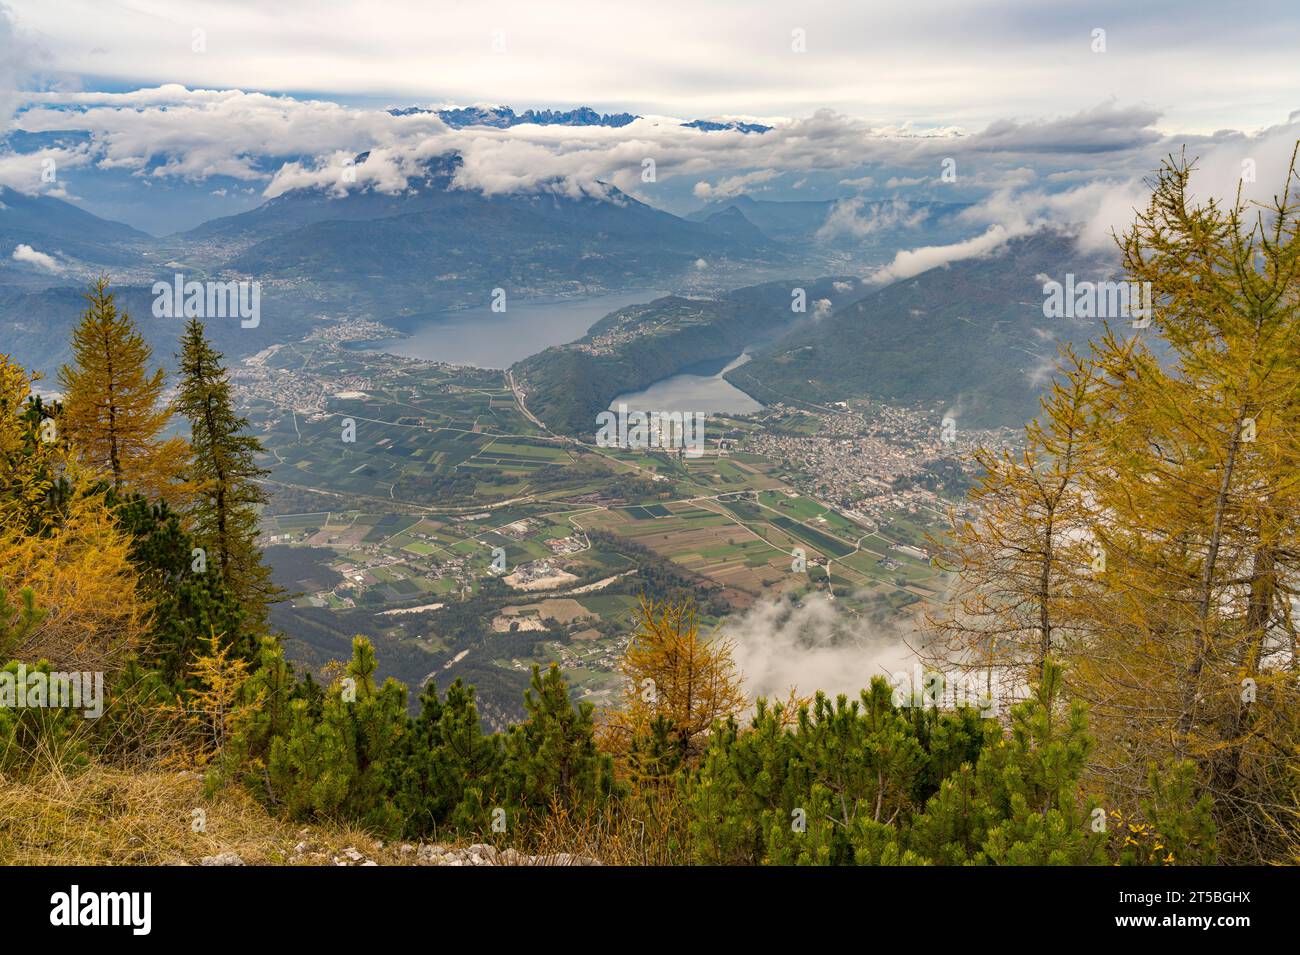 Blick vom Gipfel des Berg Pizzo di Levico auf die seen im Suganertal, Trentino, Italien, Europa | Vista desde la cumbre del monte Pizzo di Levico hasta t Foto de stock